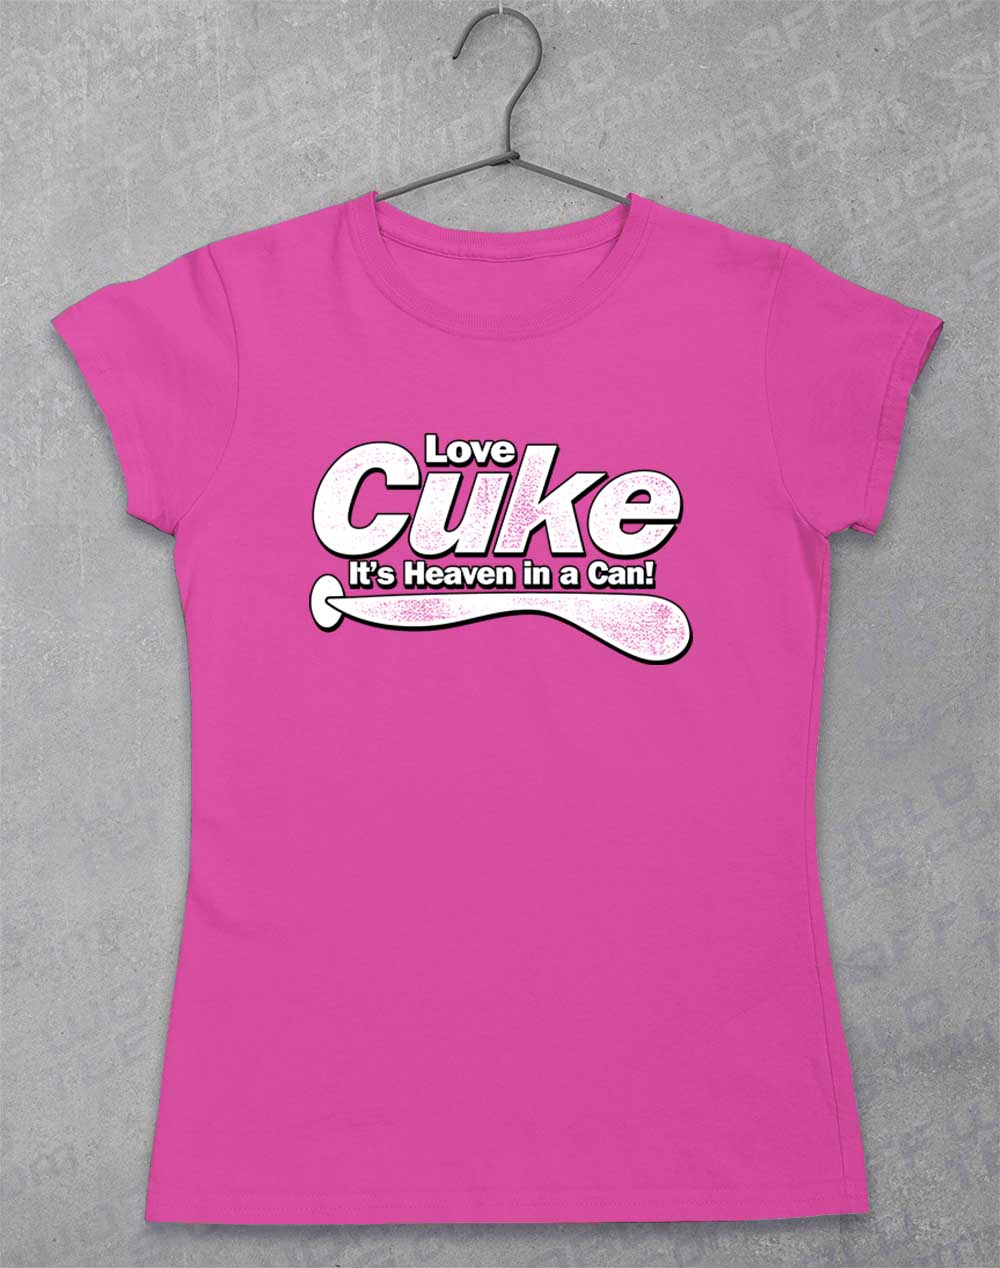 Azalea - Cuke Heaven in a Can Women's T-Shirt